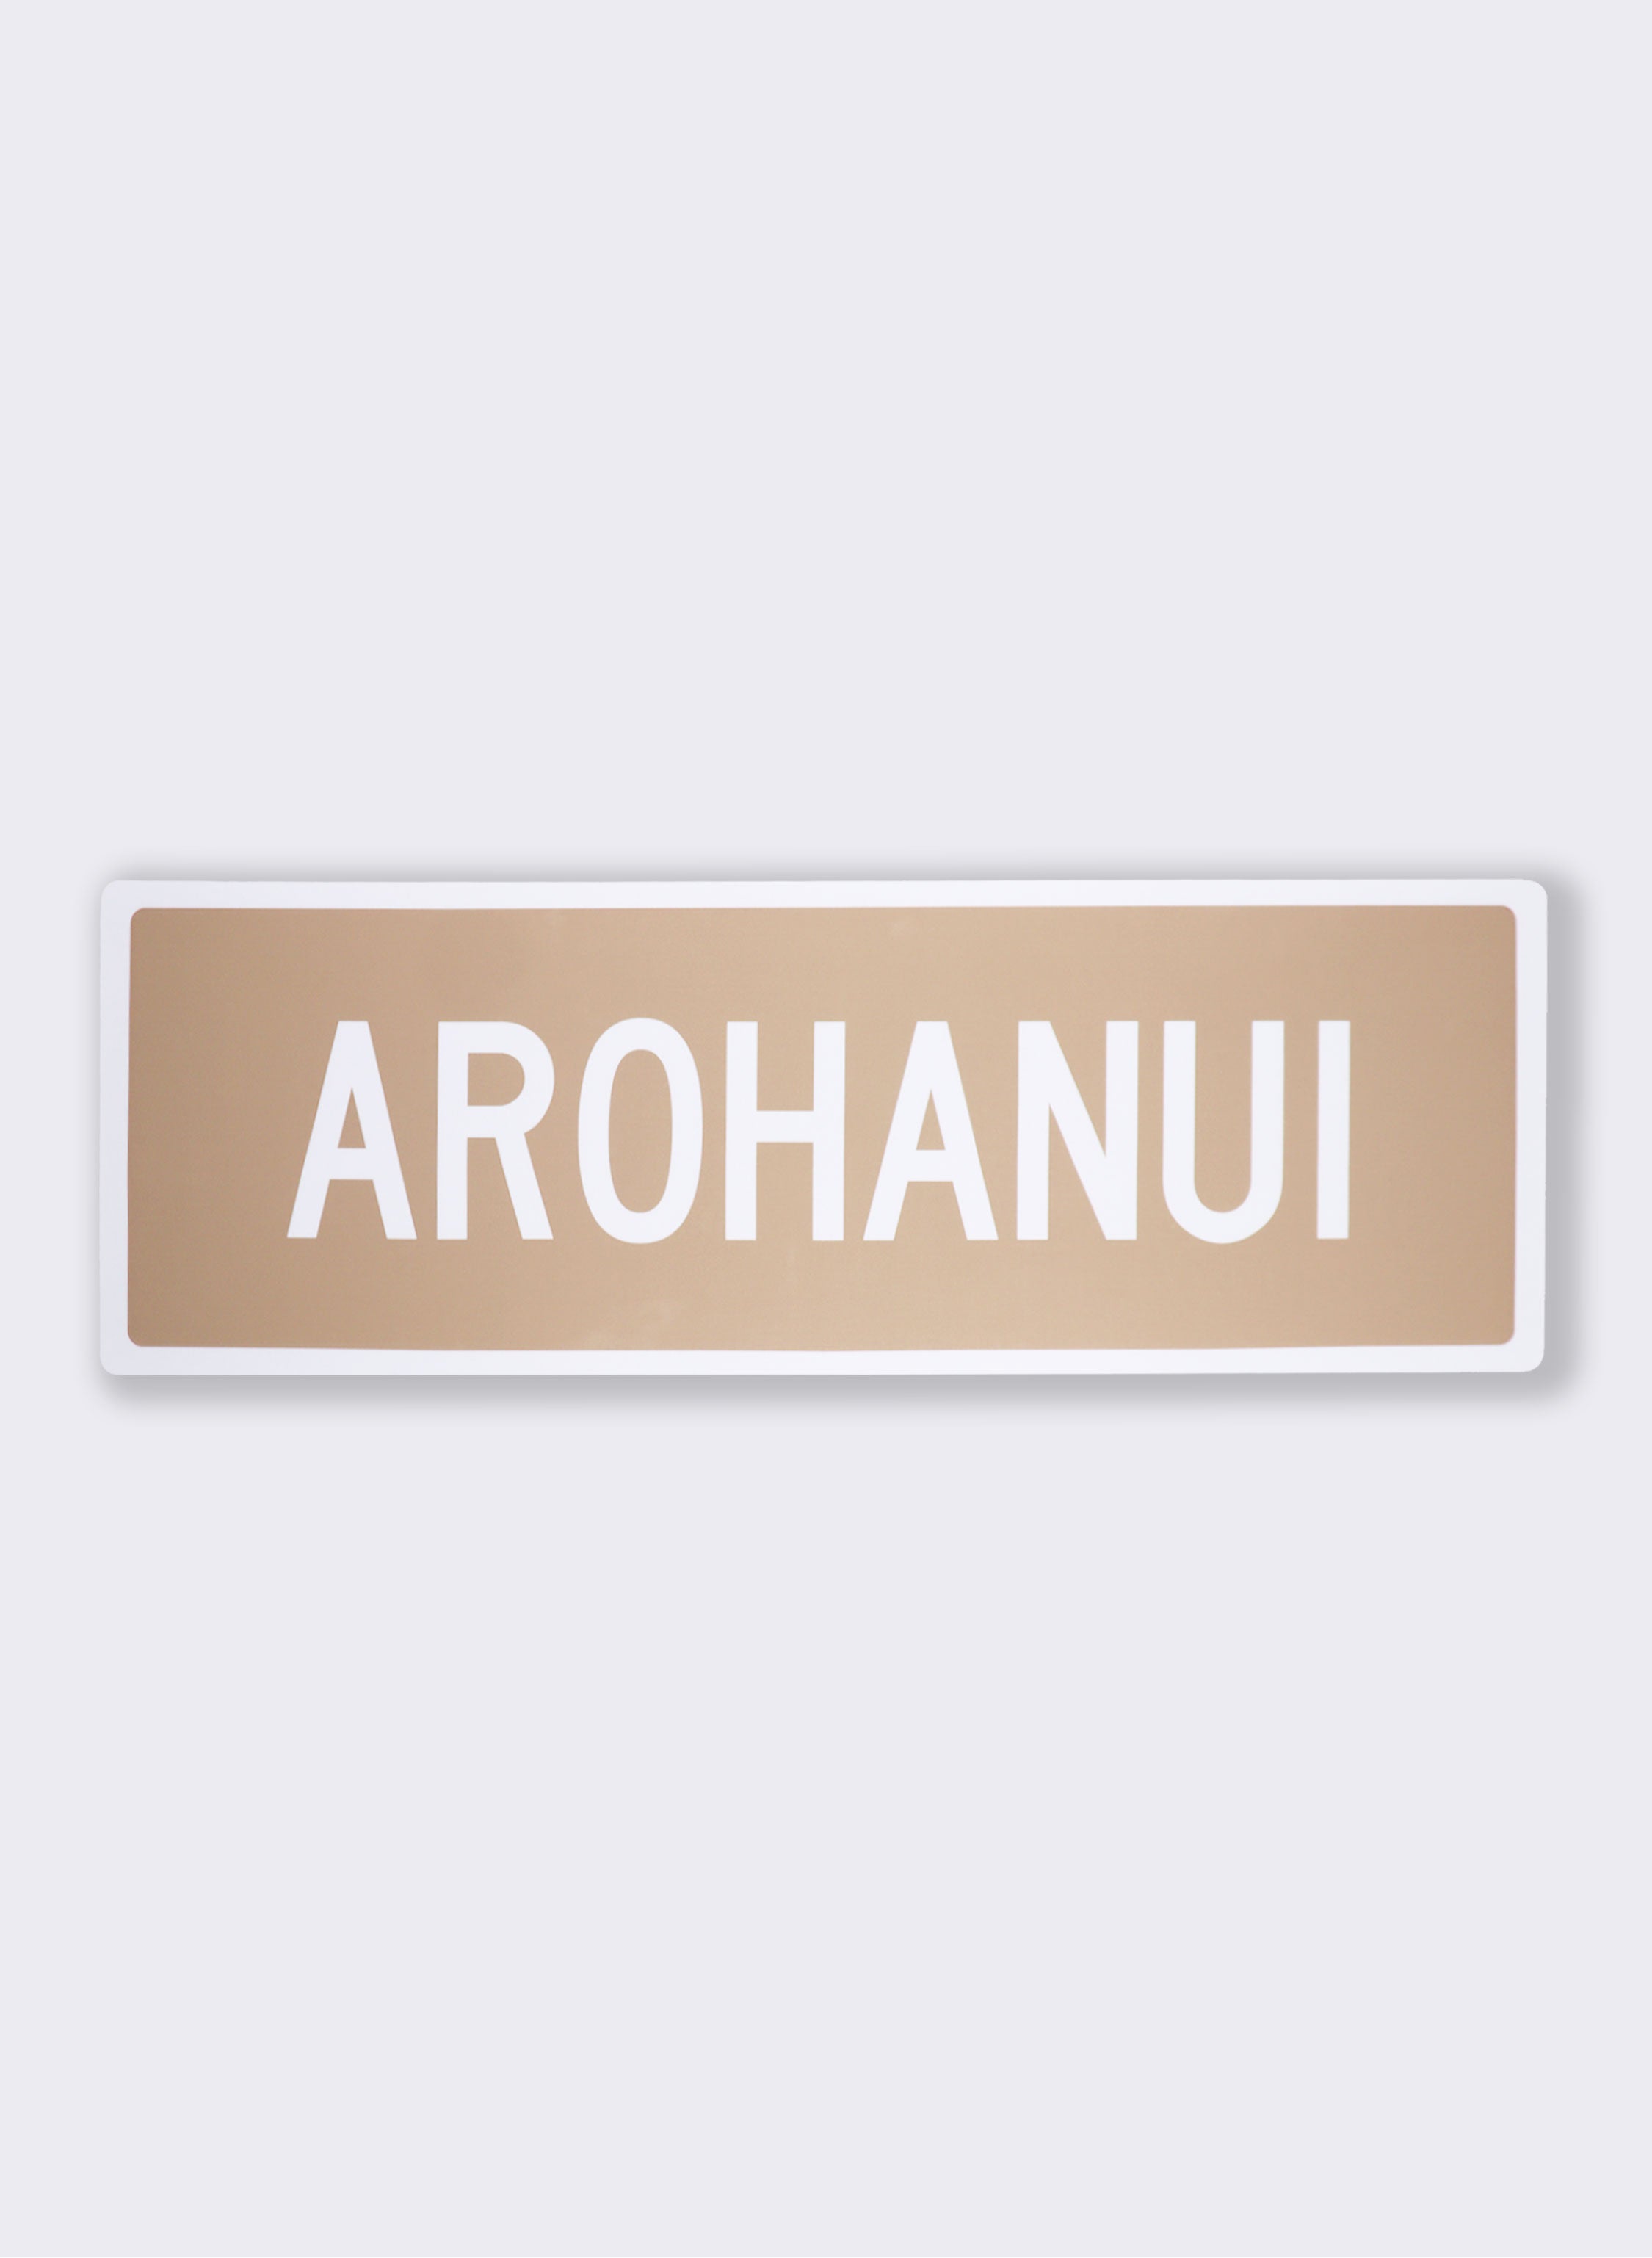 Arohanui - Road Sign Art